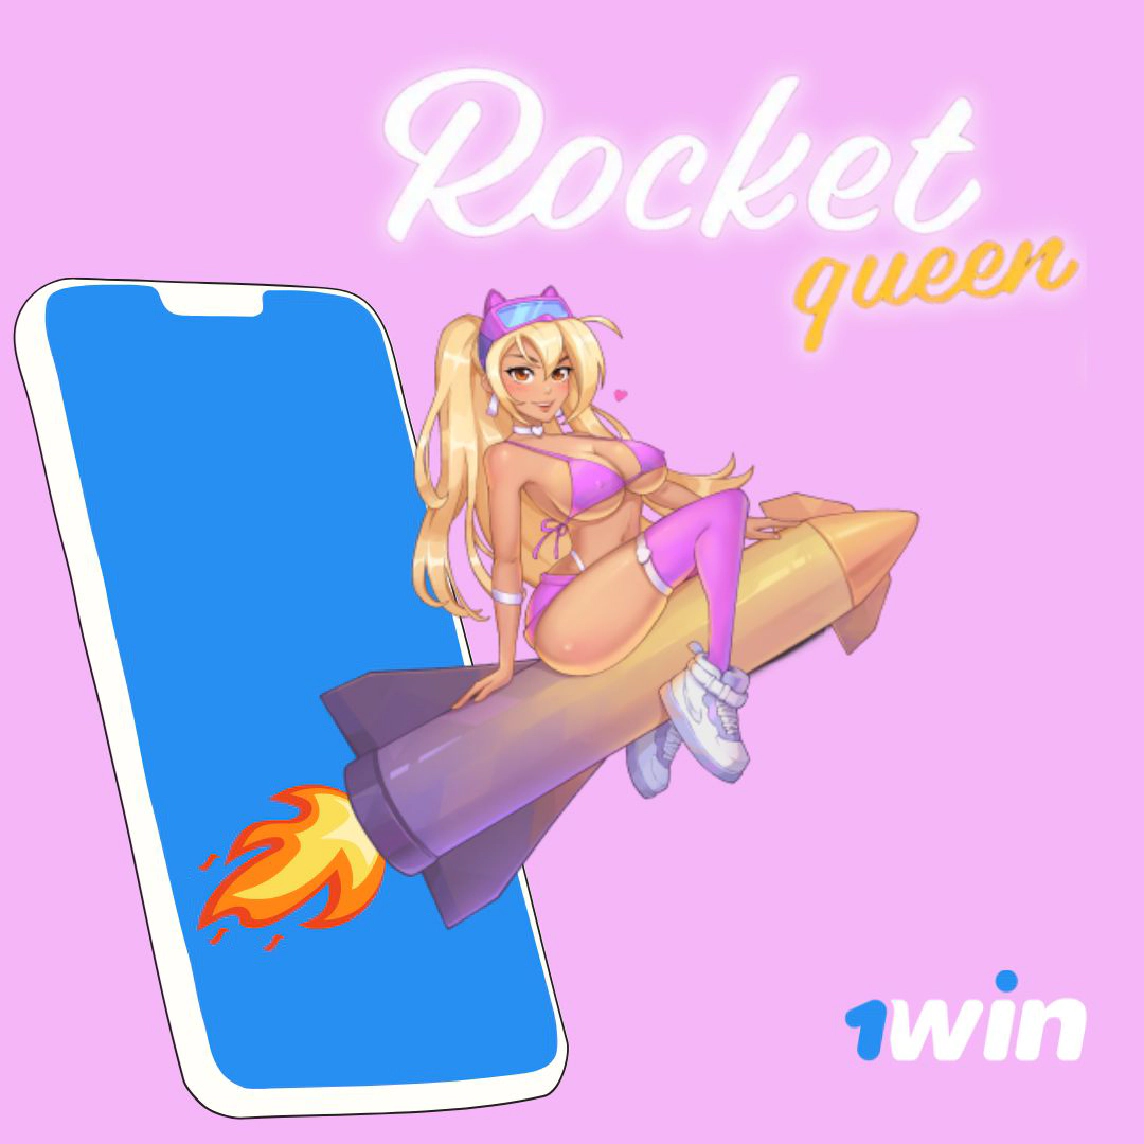 Rocket Queen ұяшығы 1win казинода ойнайды